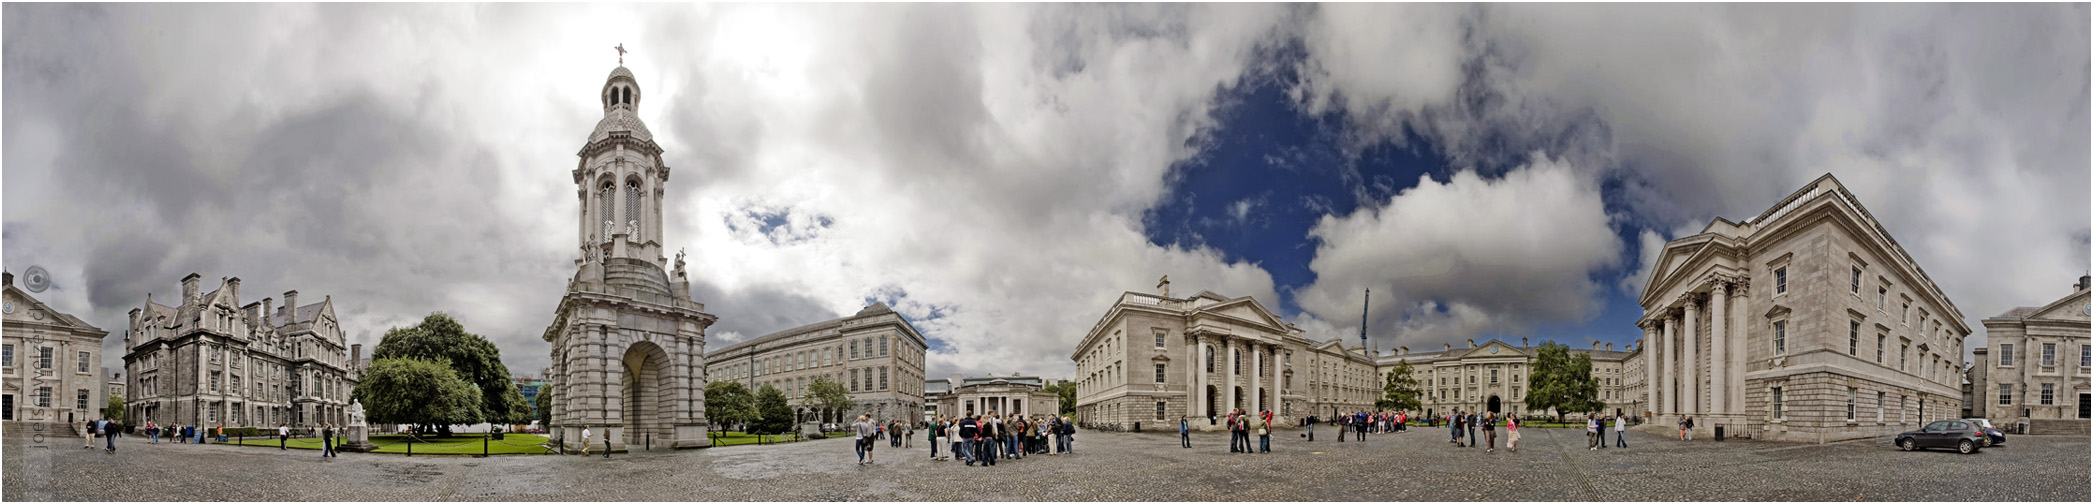 Foto Panorama Universität Dublin, Gebäude, Architektur